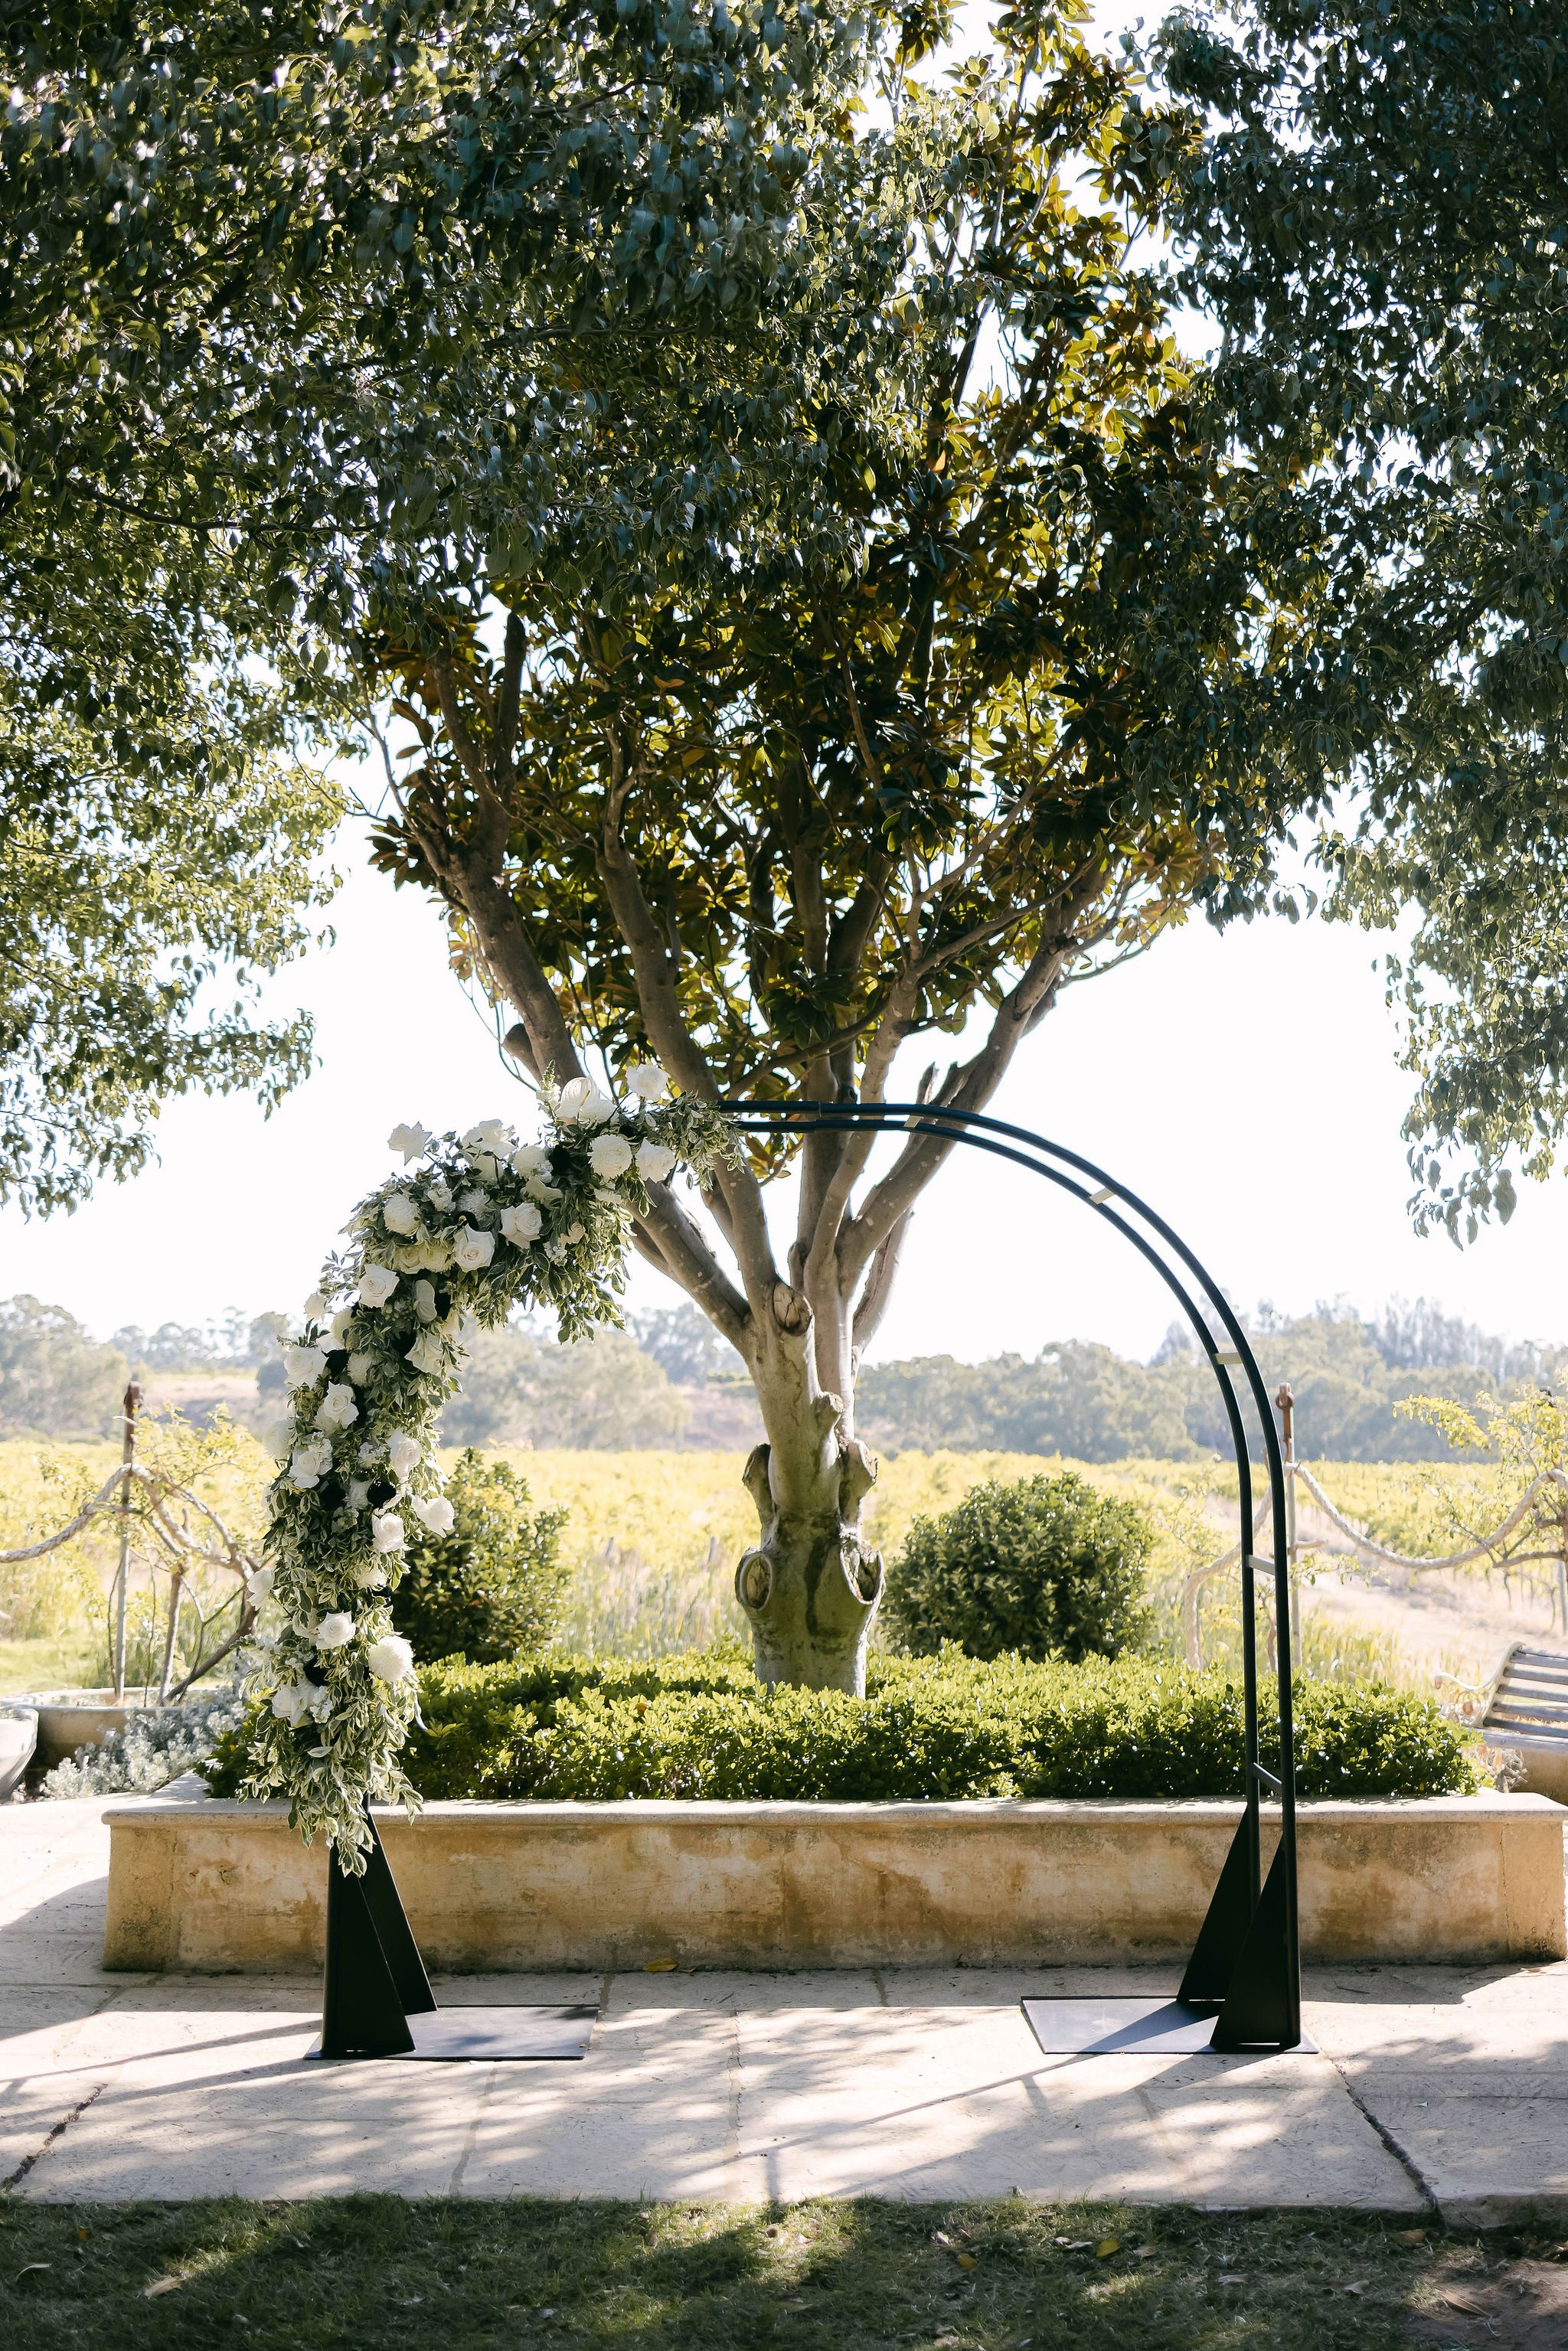 Perth Wedding Florist | Miller Rose Botanic